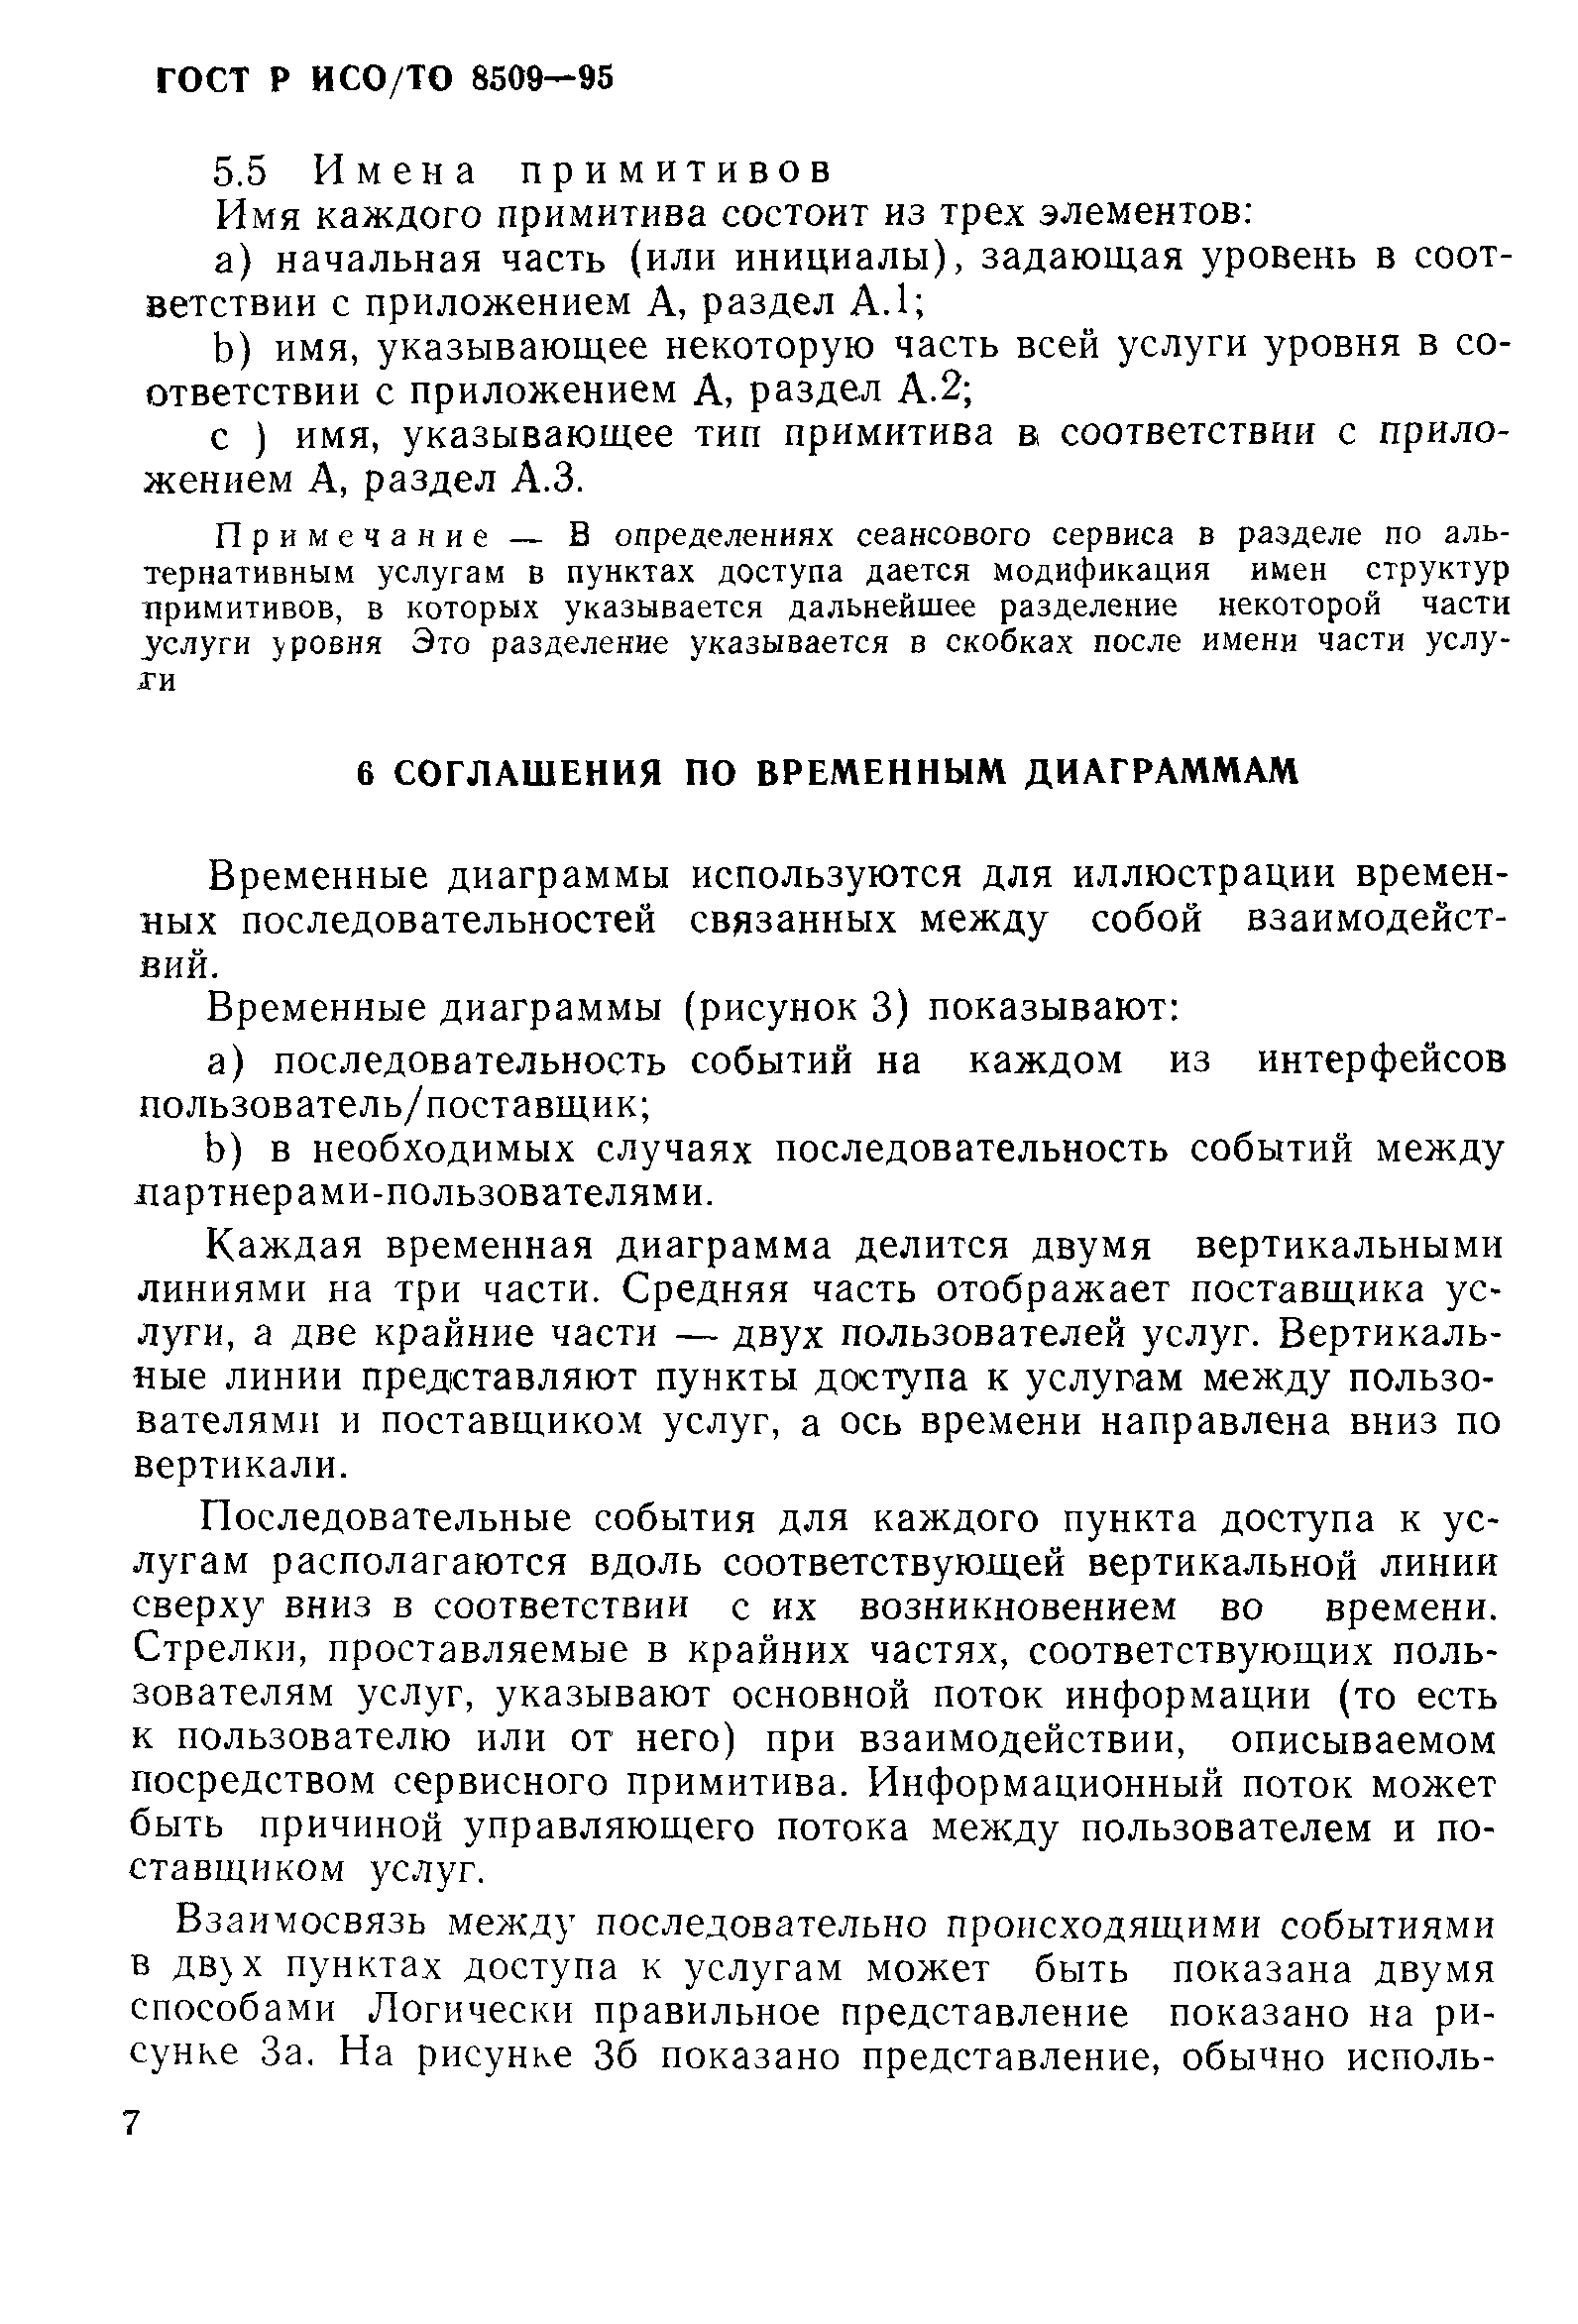 ГОСТ Р ИСО/ТО 8509-95